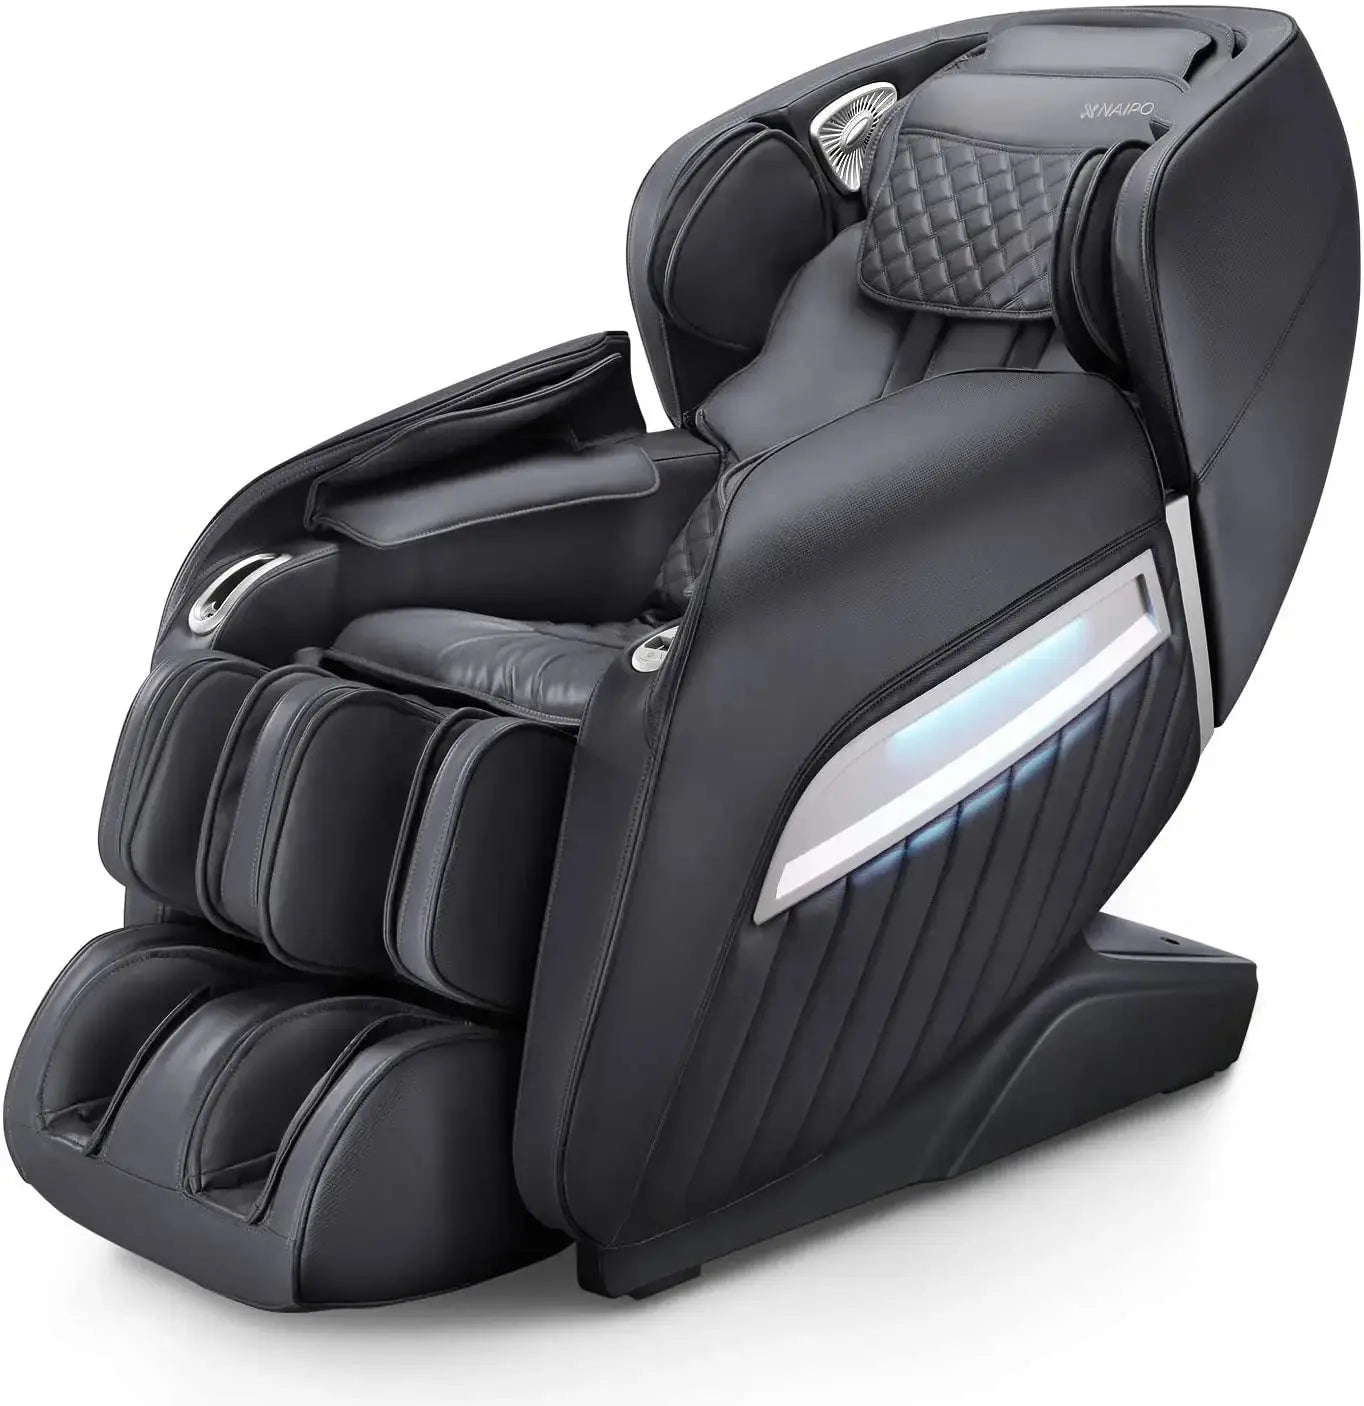 Fauteuil de massage NAIPO® Premium avec fonction de chaleur, gravité zéro, son surround 3D, massage complet du corps, utilisé